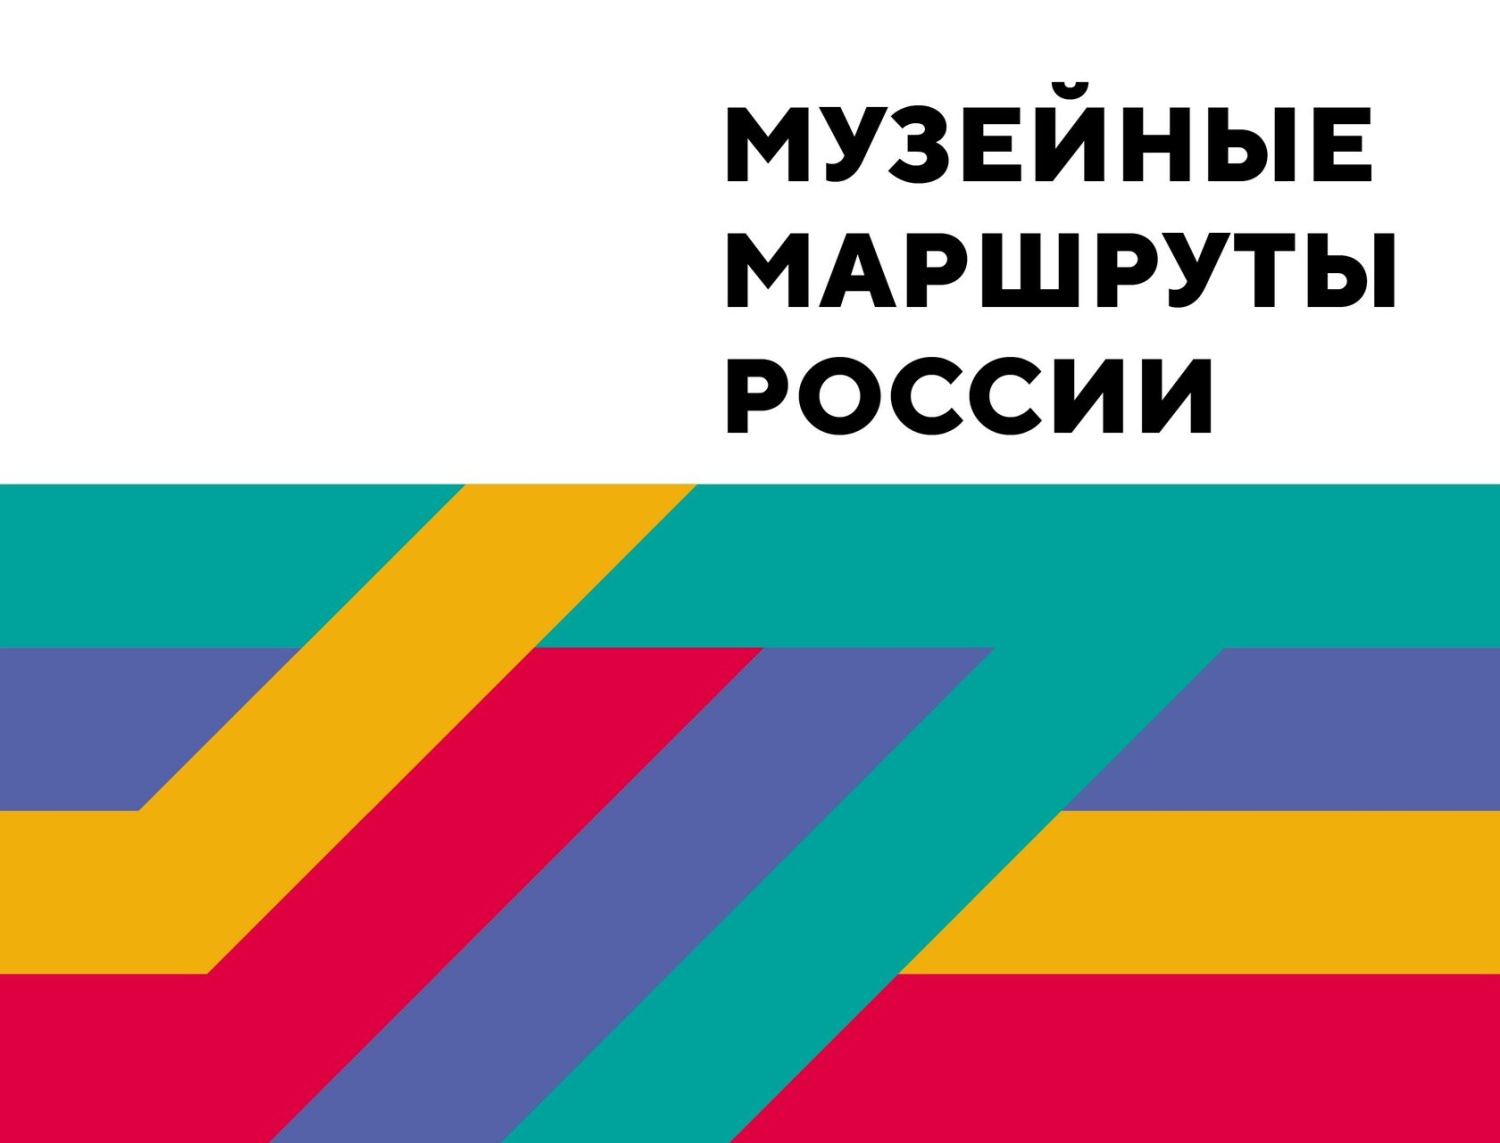 Впервые в истории встреча "Музейных маршрутов России" пройдет в закрытом городе